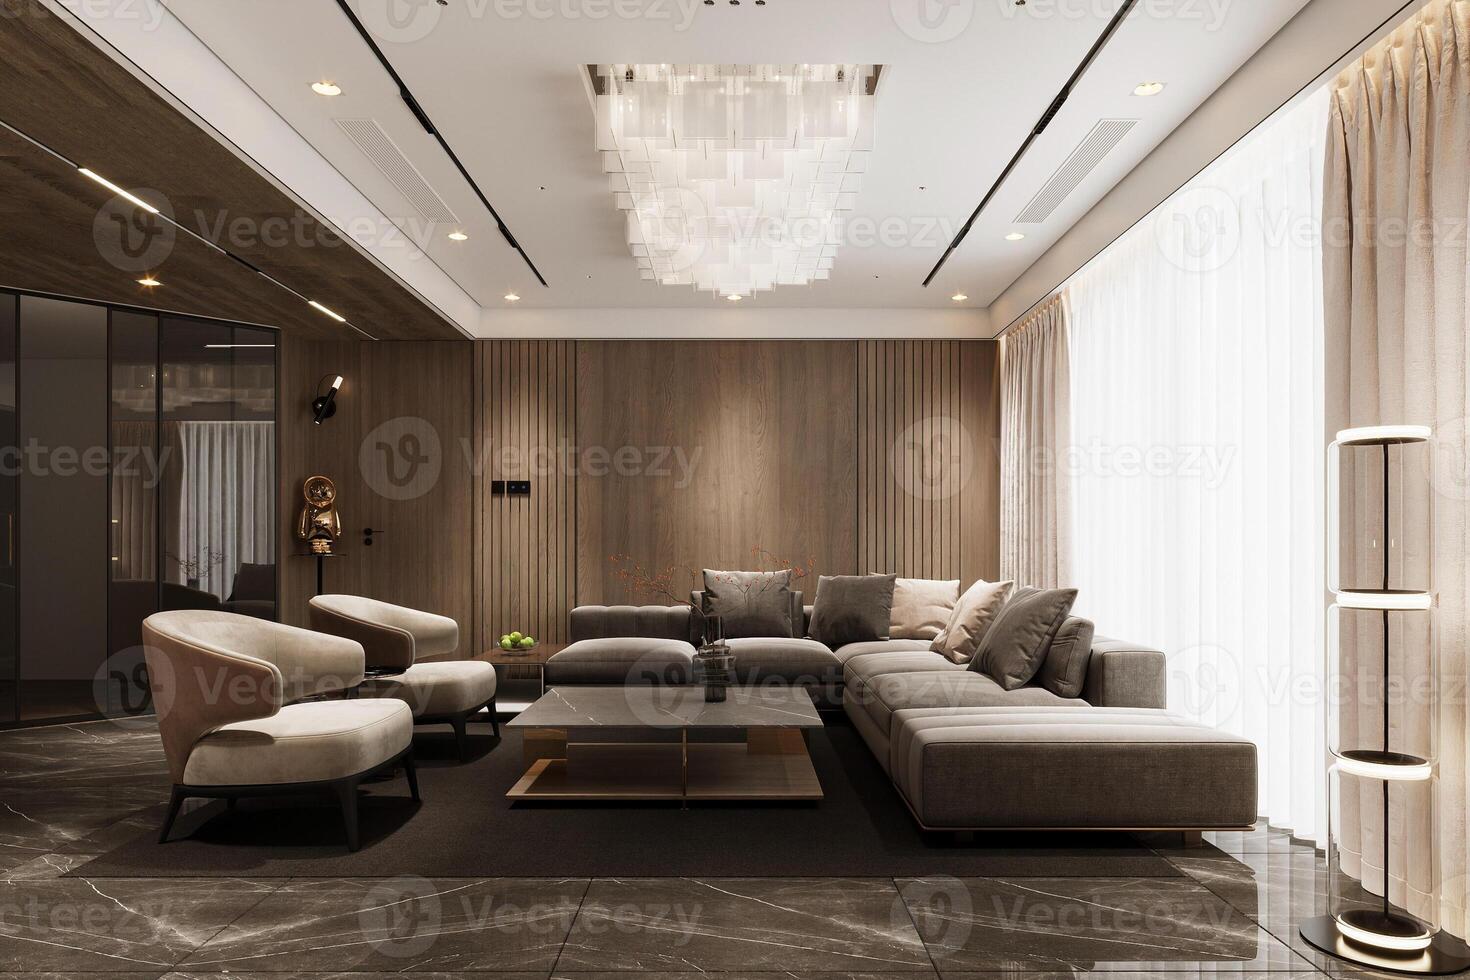 Innere von Leben Zimmer modern Stil mit grau Stoff Sofa, hölzern Seite Tisch, und Weiß Decke Lampe foto